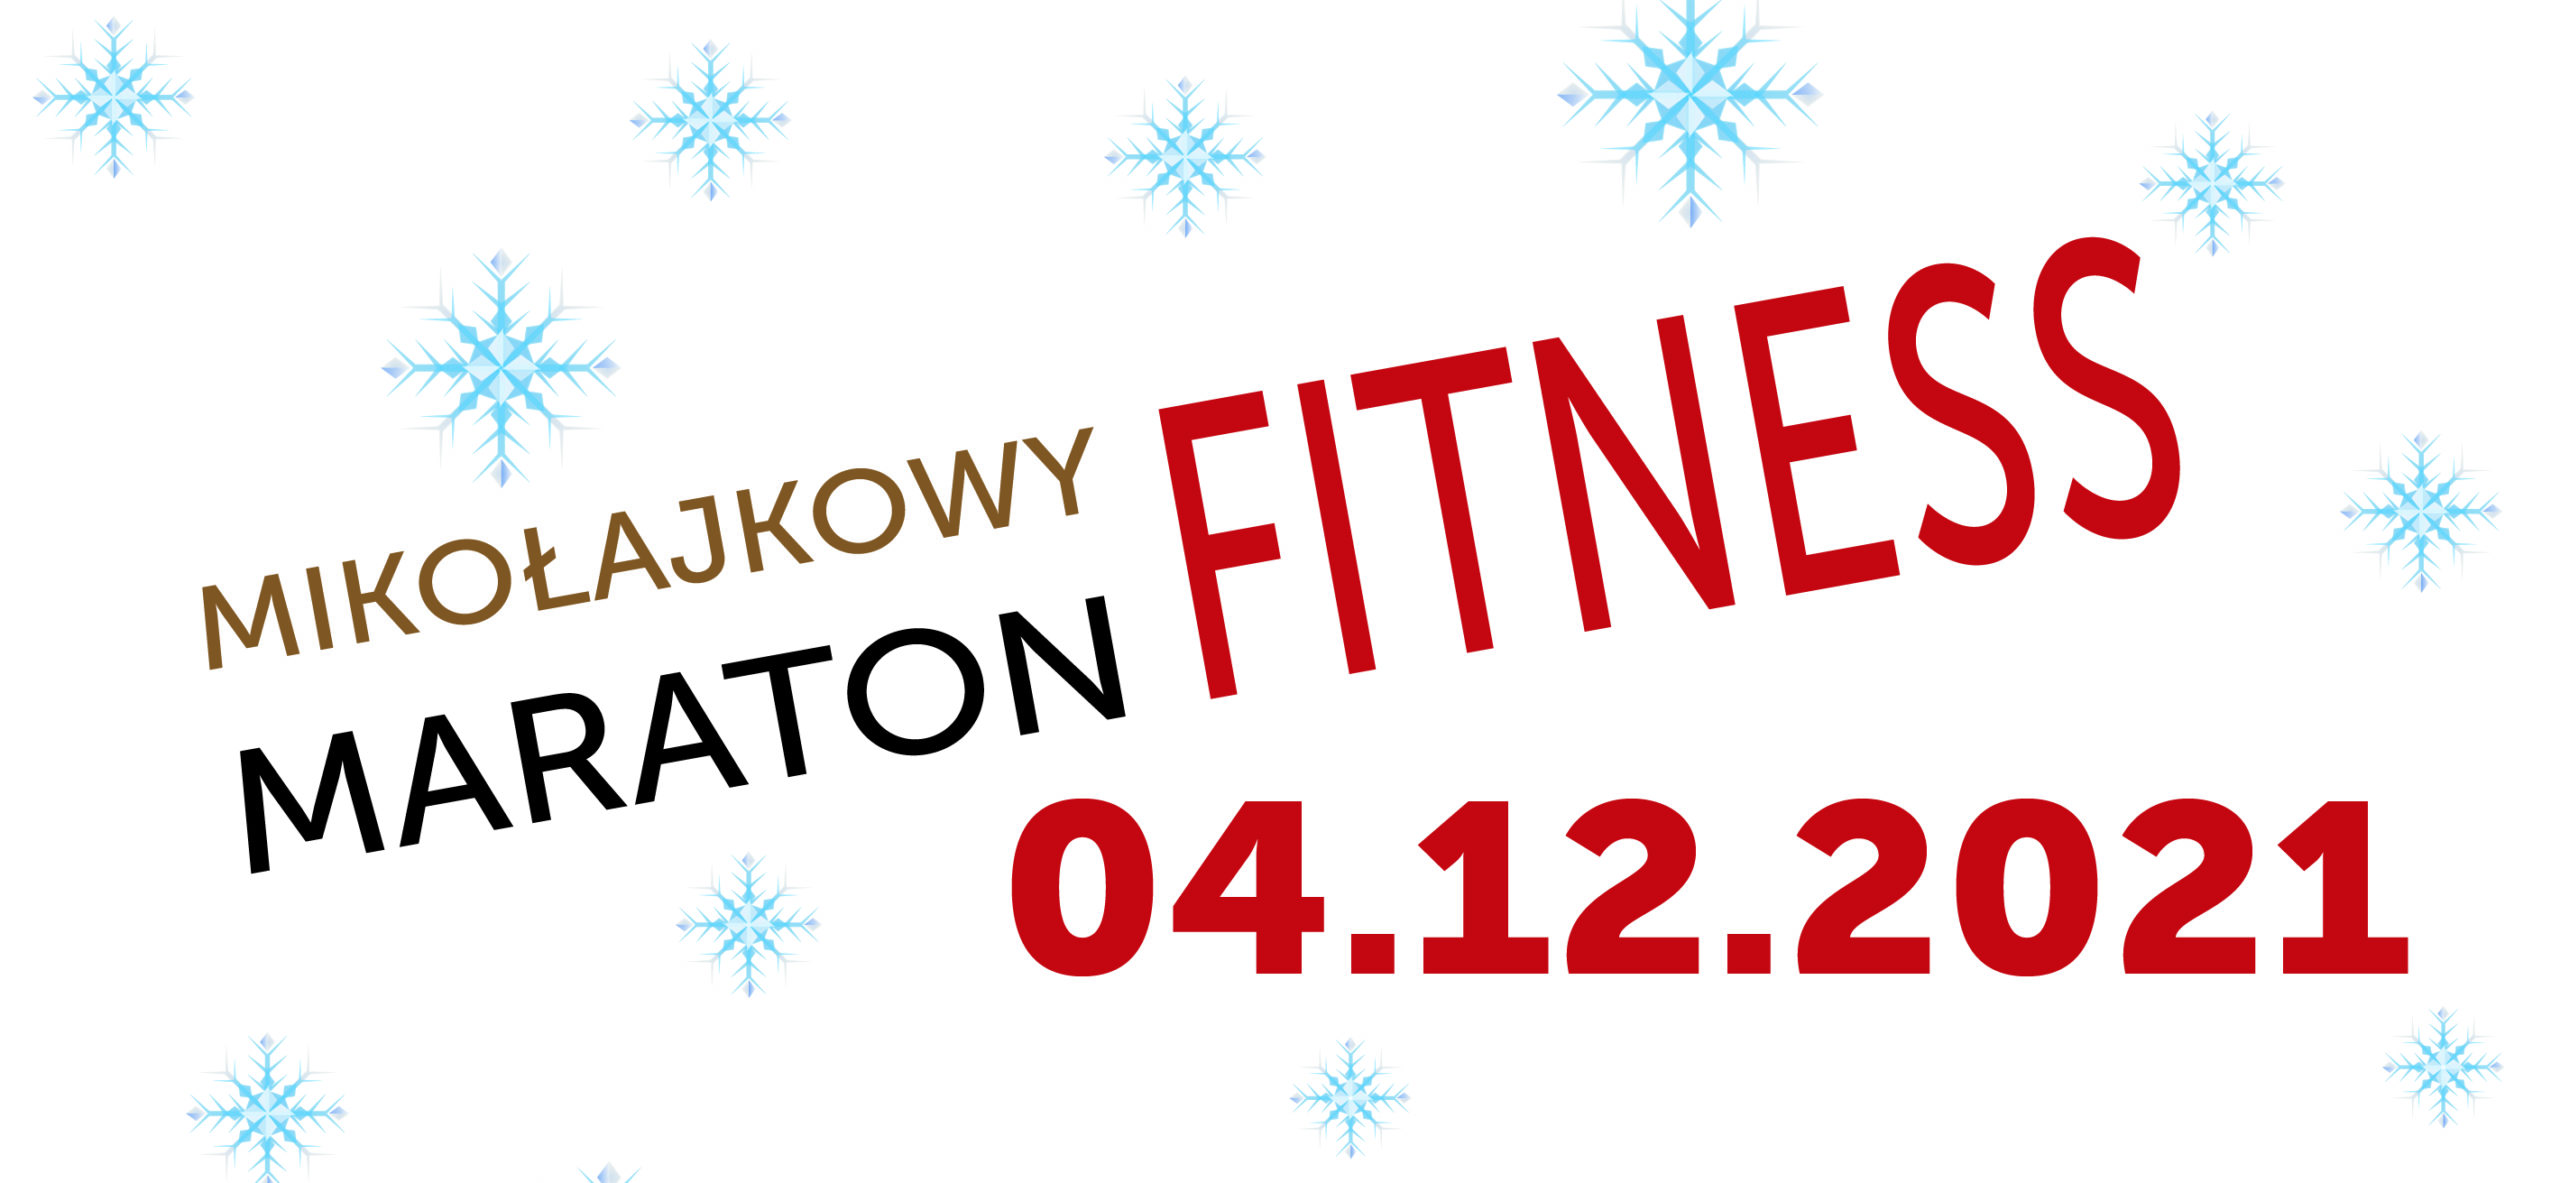 Mikołajkowy Maraton Fitness 4 grudnia